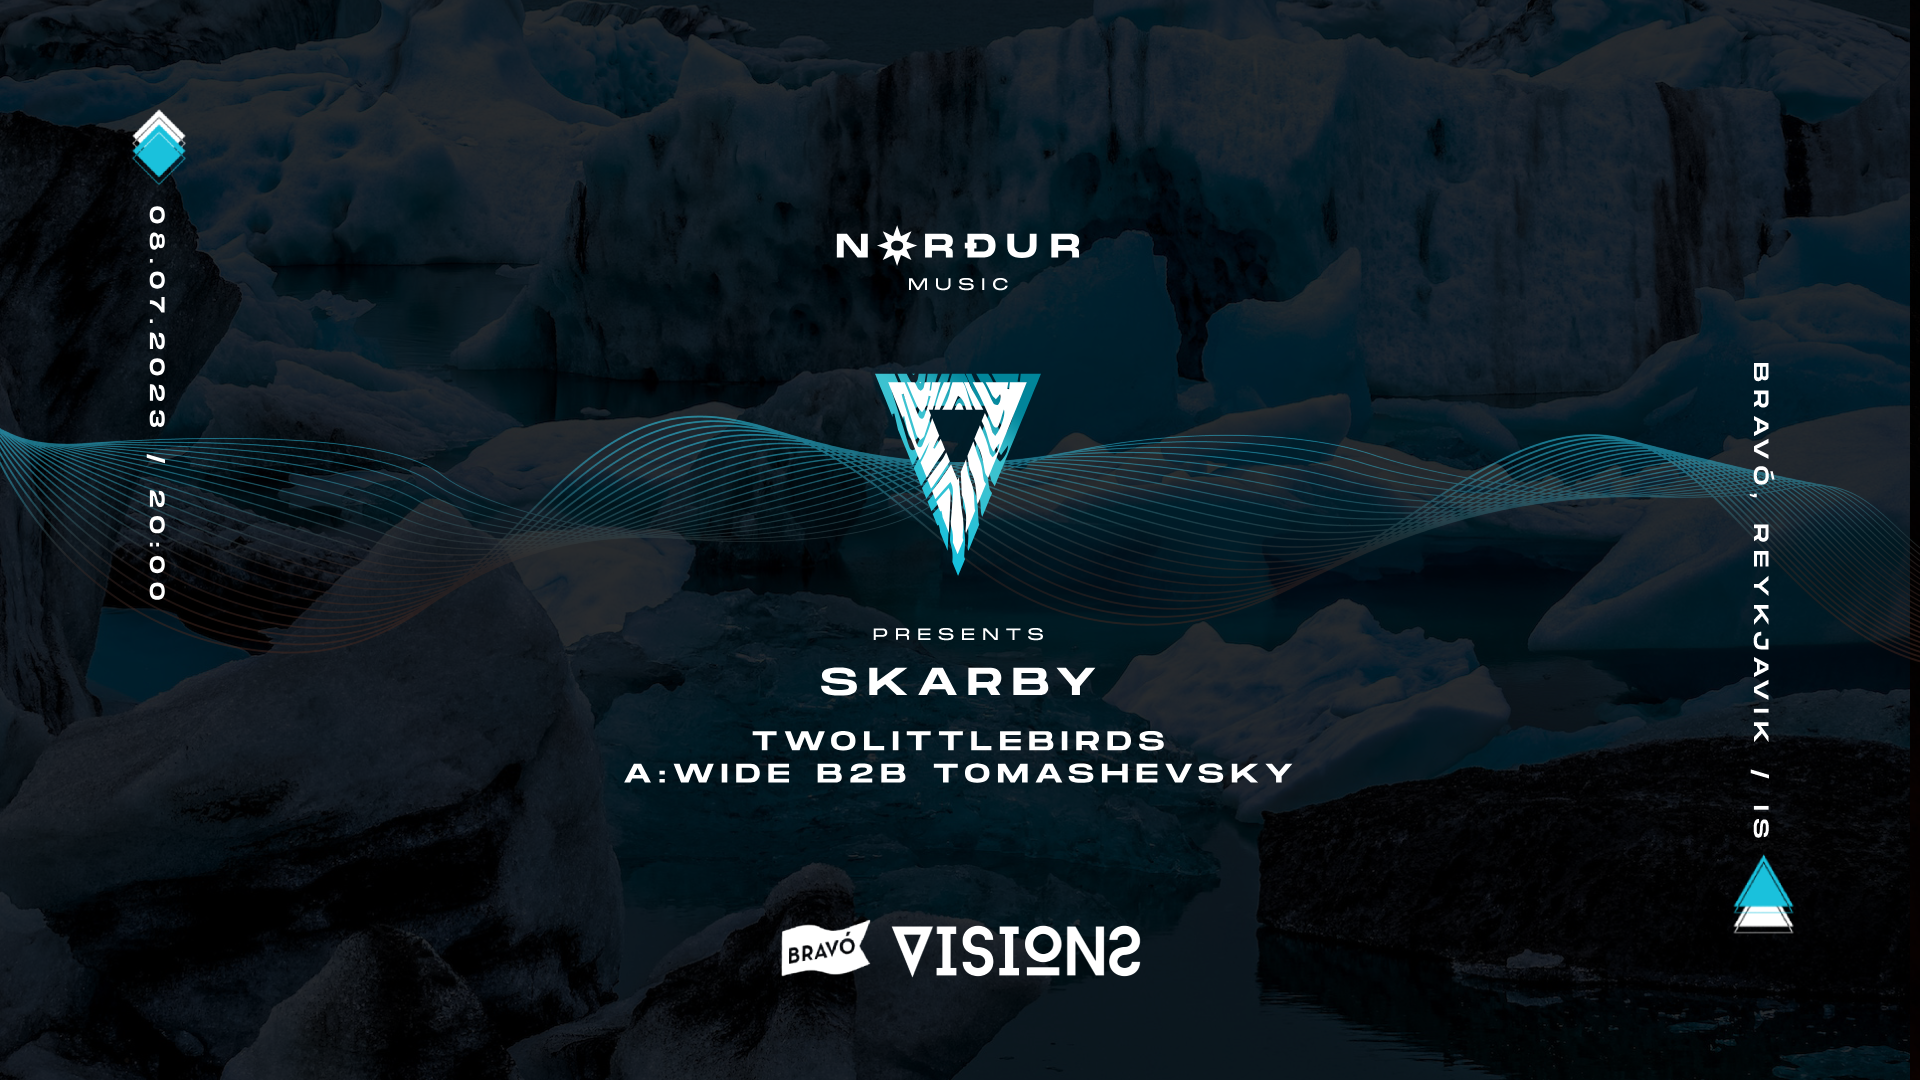 Nordur Music pres. Skarby - Página frontal